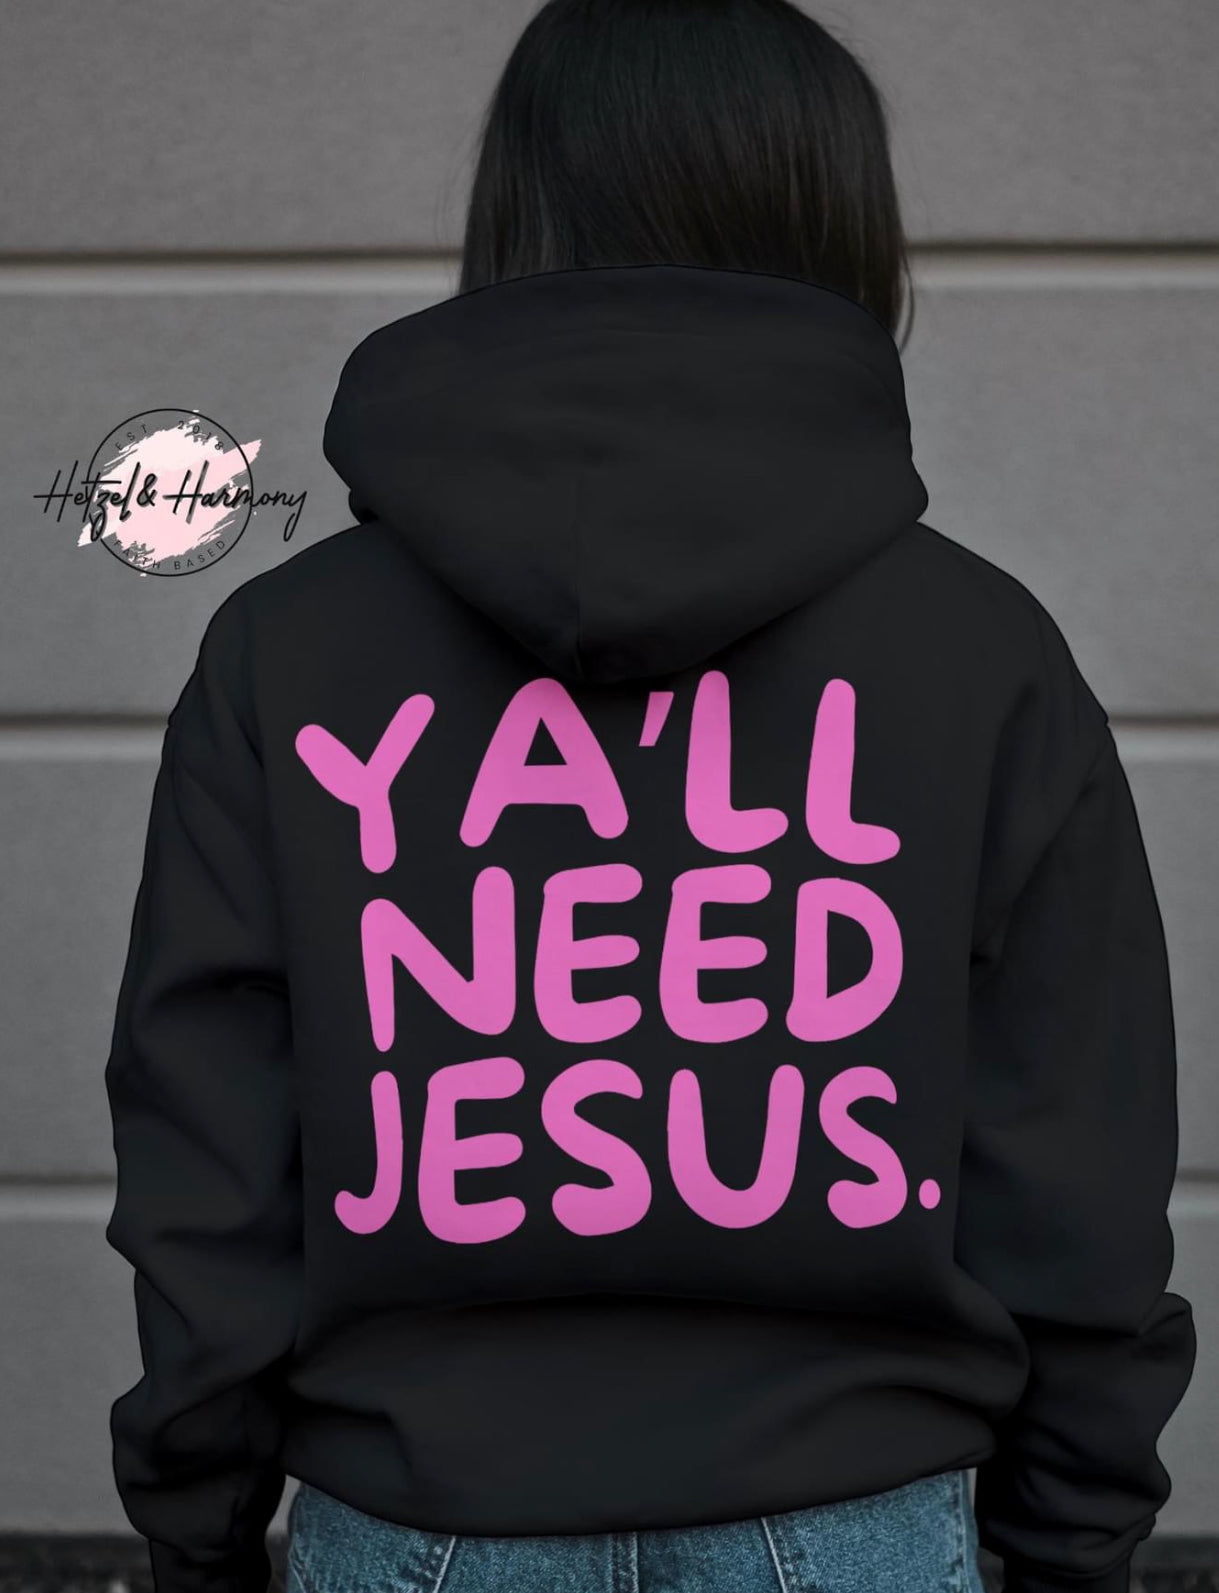 Ya’ll need Jesus